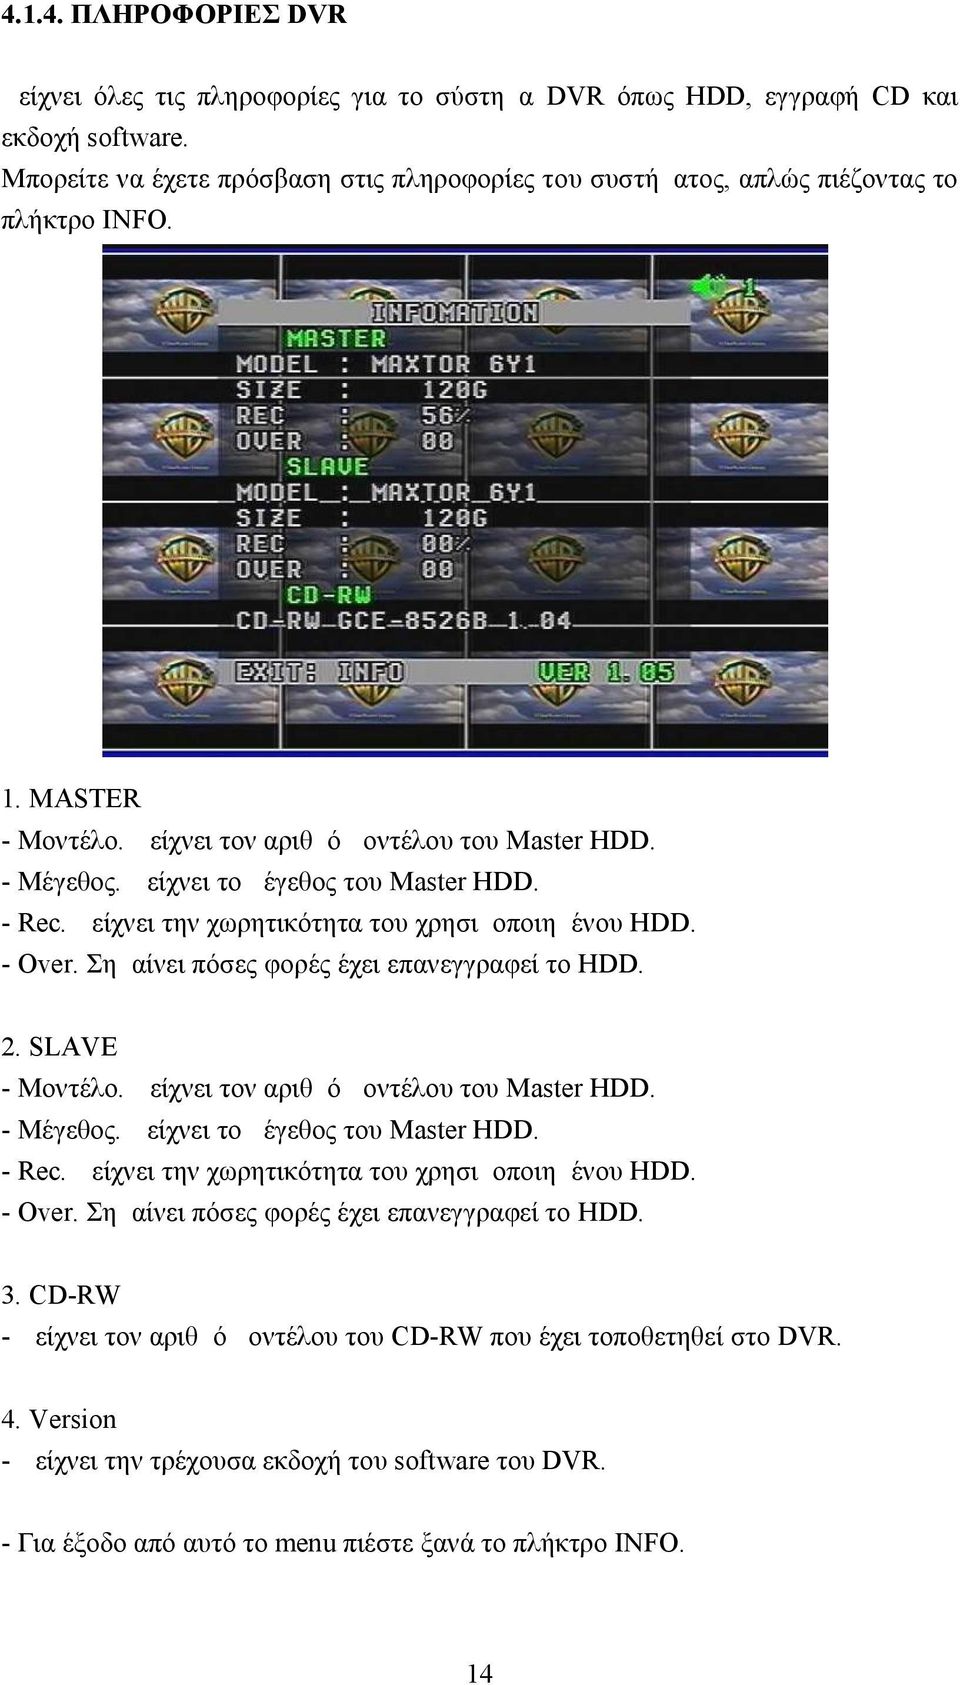 Δείχνει το μέγεθος του Master HDD. - Rec. Δείχνει την χωρητικότητα του χρησιμοποιημένου HDD. - Over. Σημαίνει πόσες φορές έχει επανεγγραφεί το HDD. 2. SLAVE - Μοντέλο.